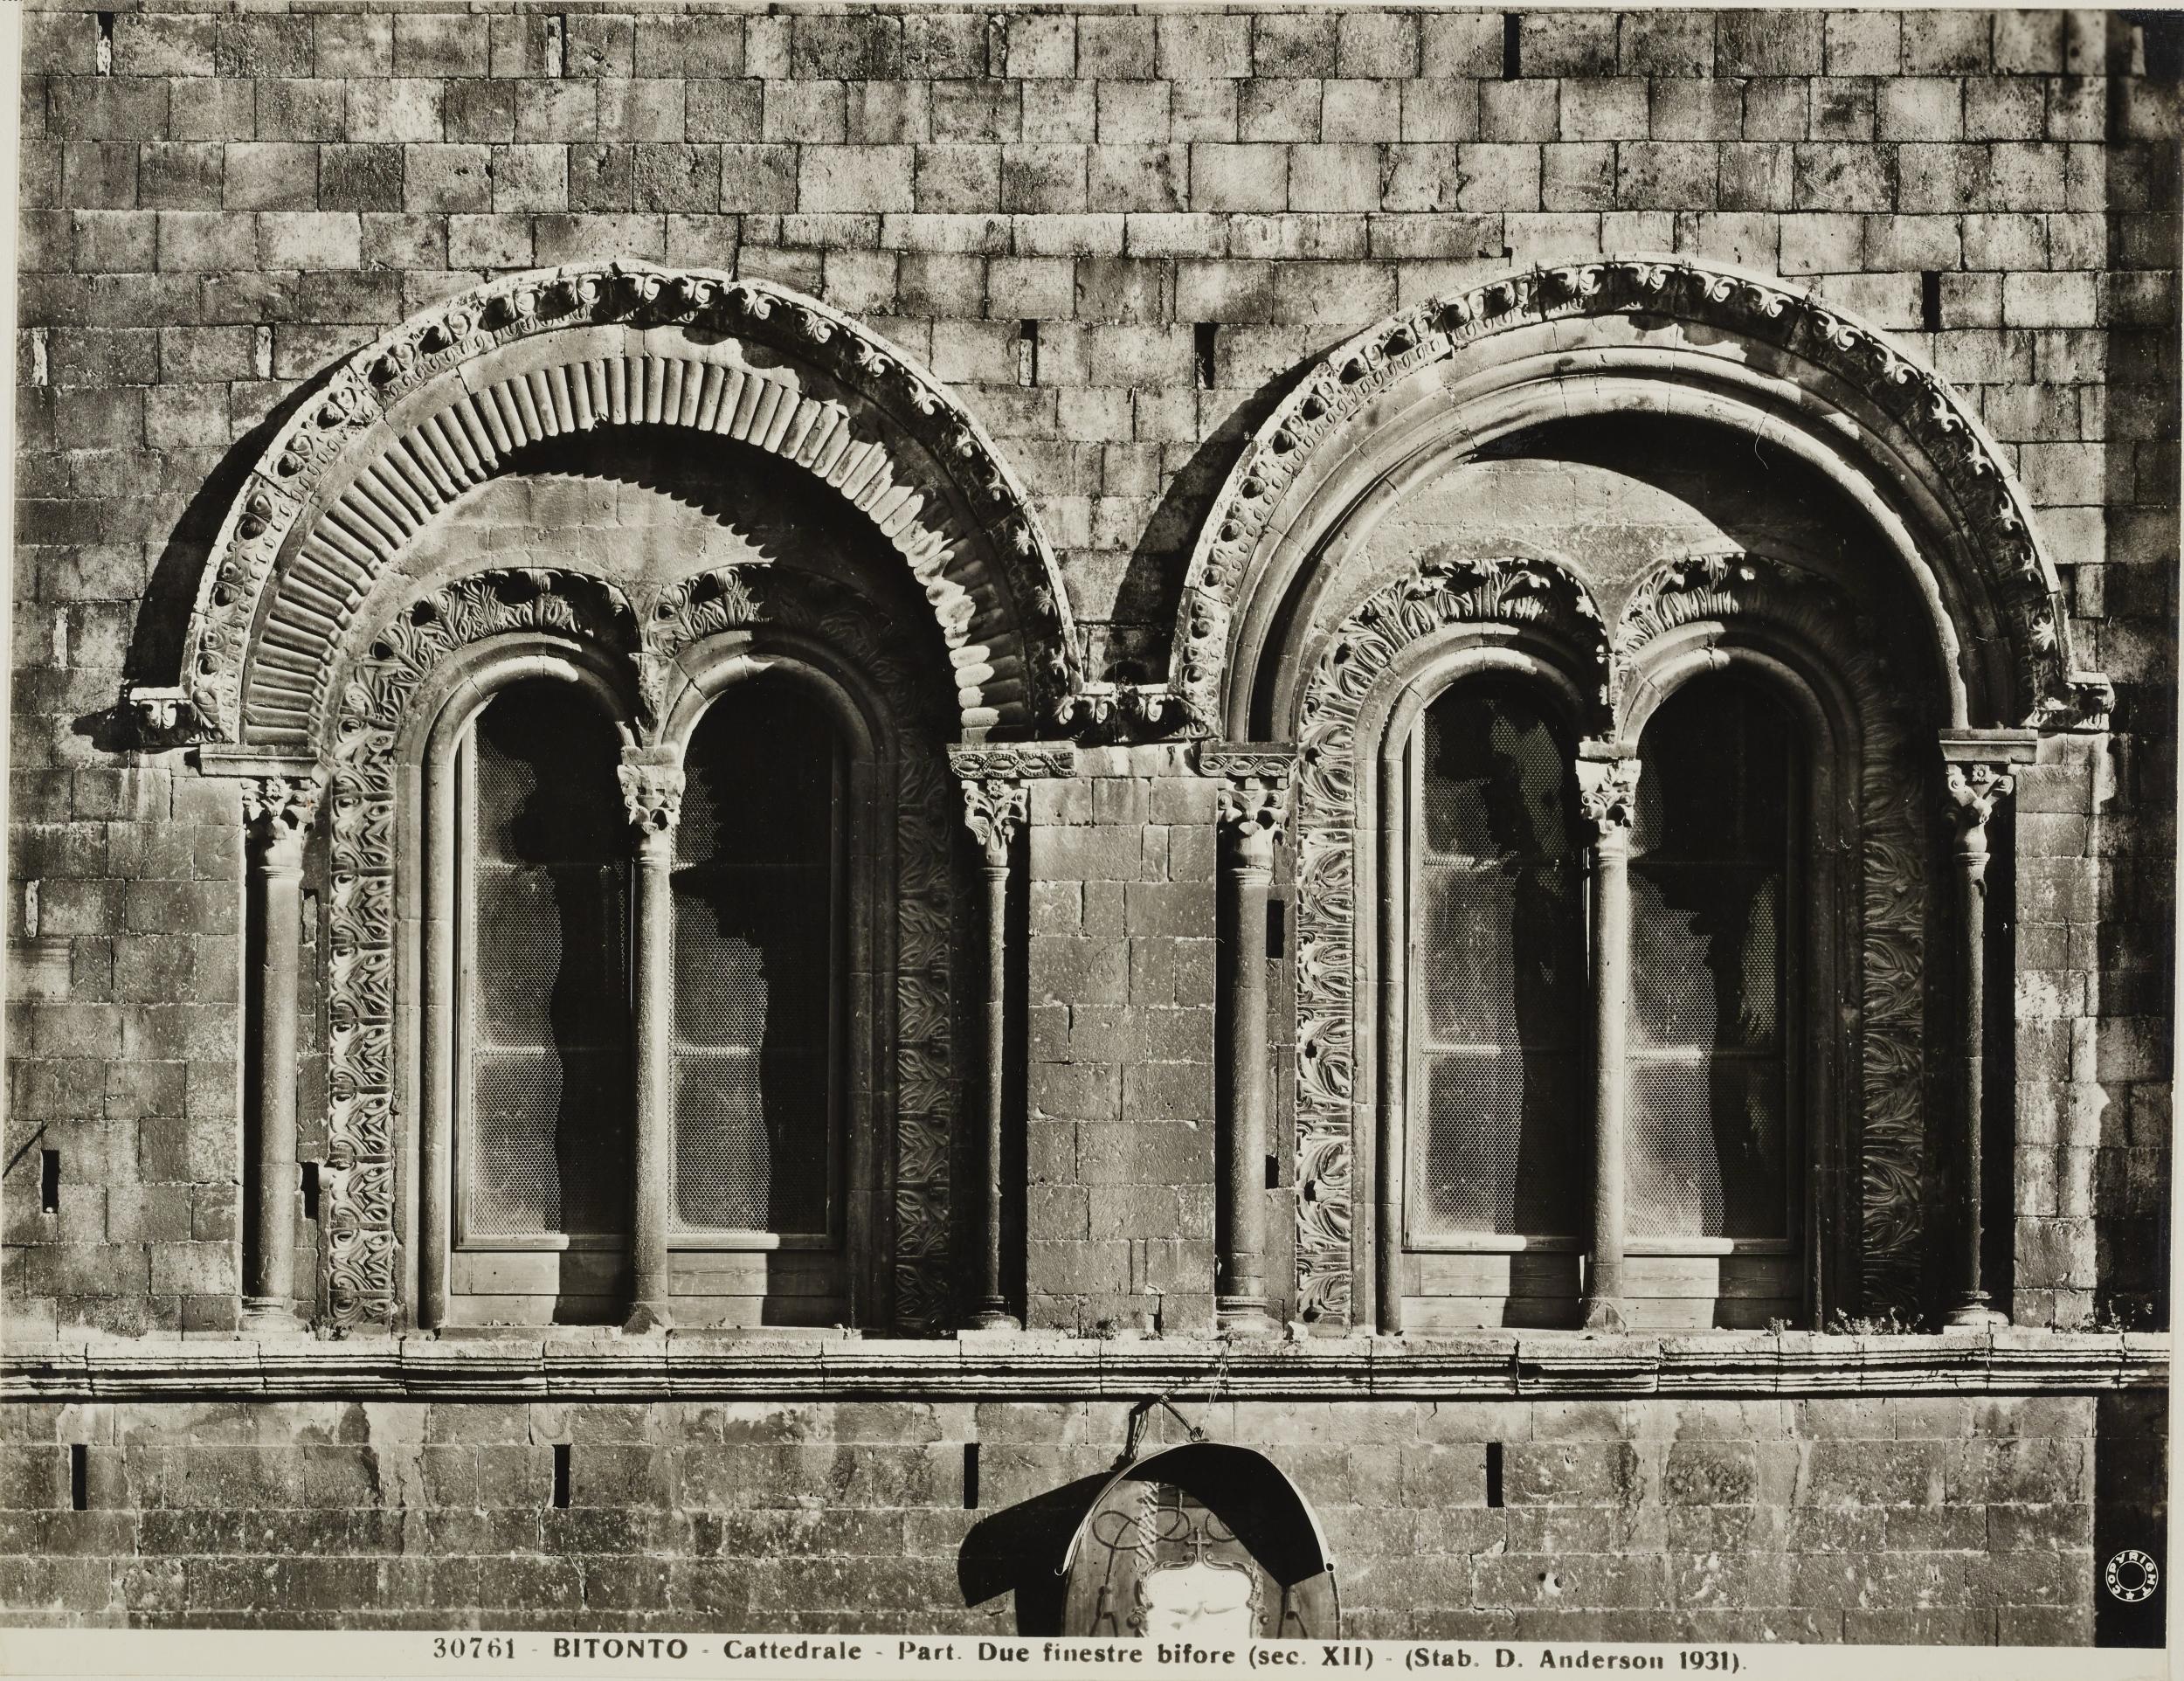 Fotografo non identificato, Bitonto - Cattedrale di S. Valentino, bifore, 1931 ante, gelatina ai sali d'argento/carta, MPI137827